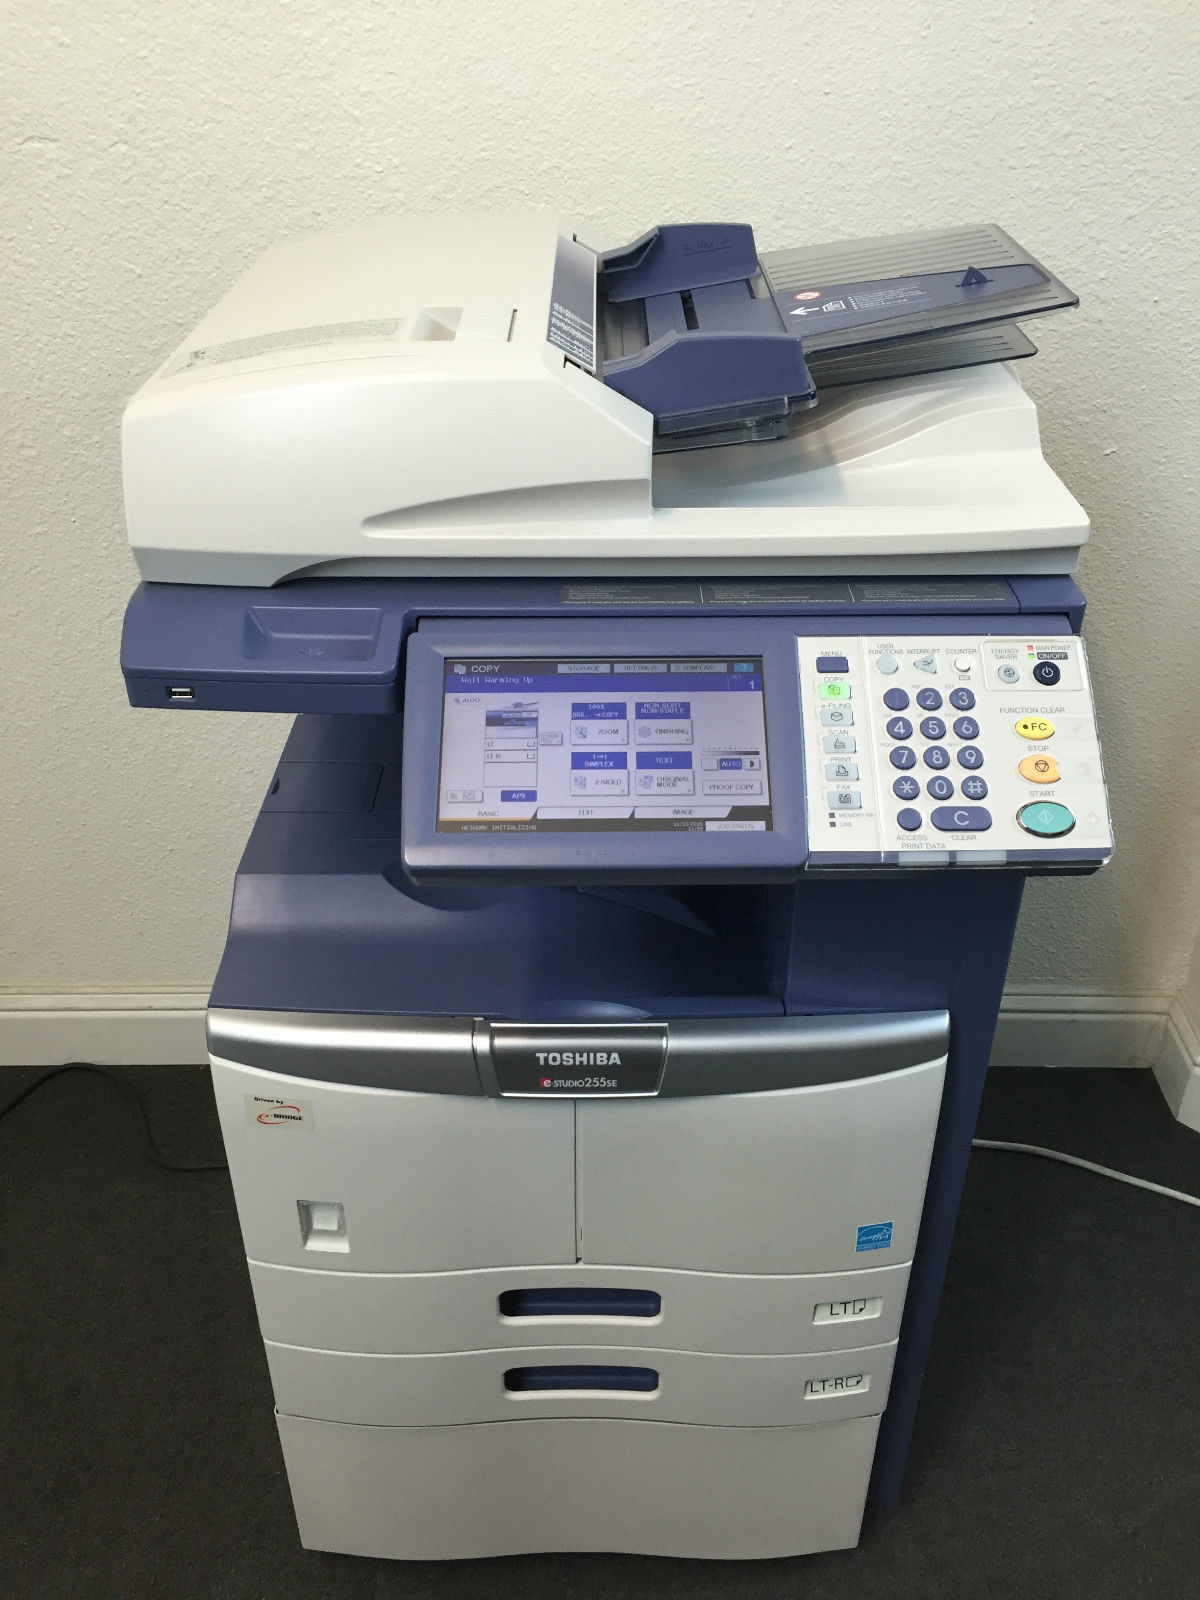 Toshiba e-studio 255SE Copier Printer Scanner Network Fax FREE SHIPPING in USA - $1,782.00